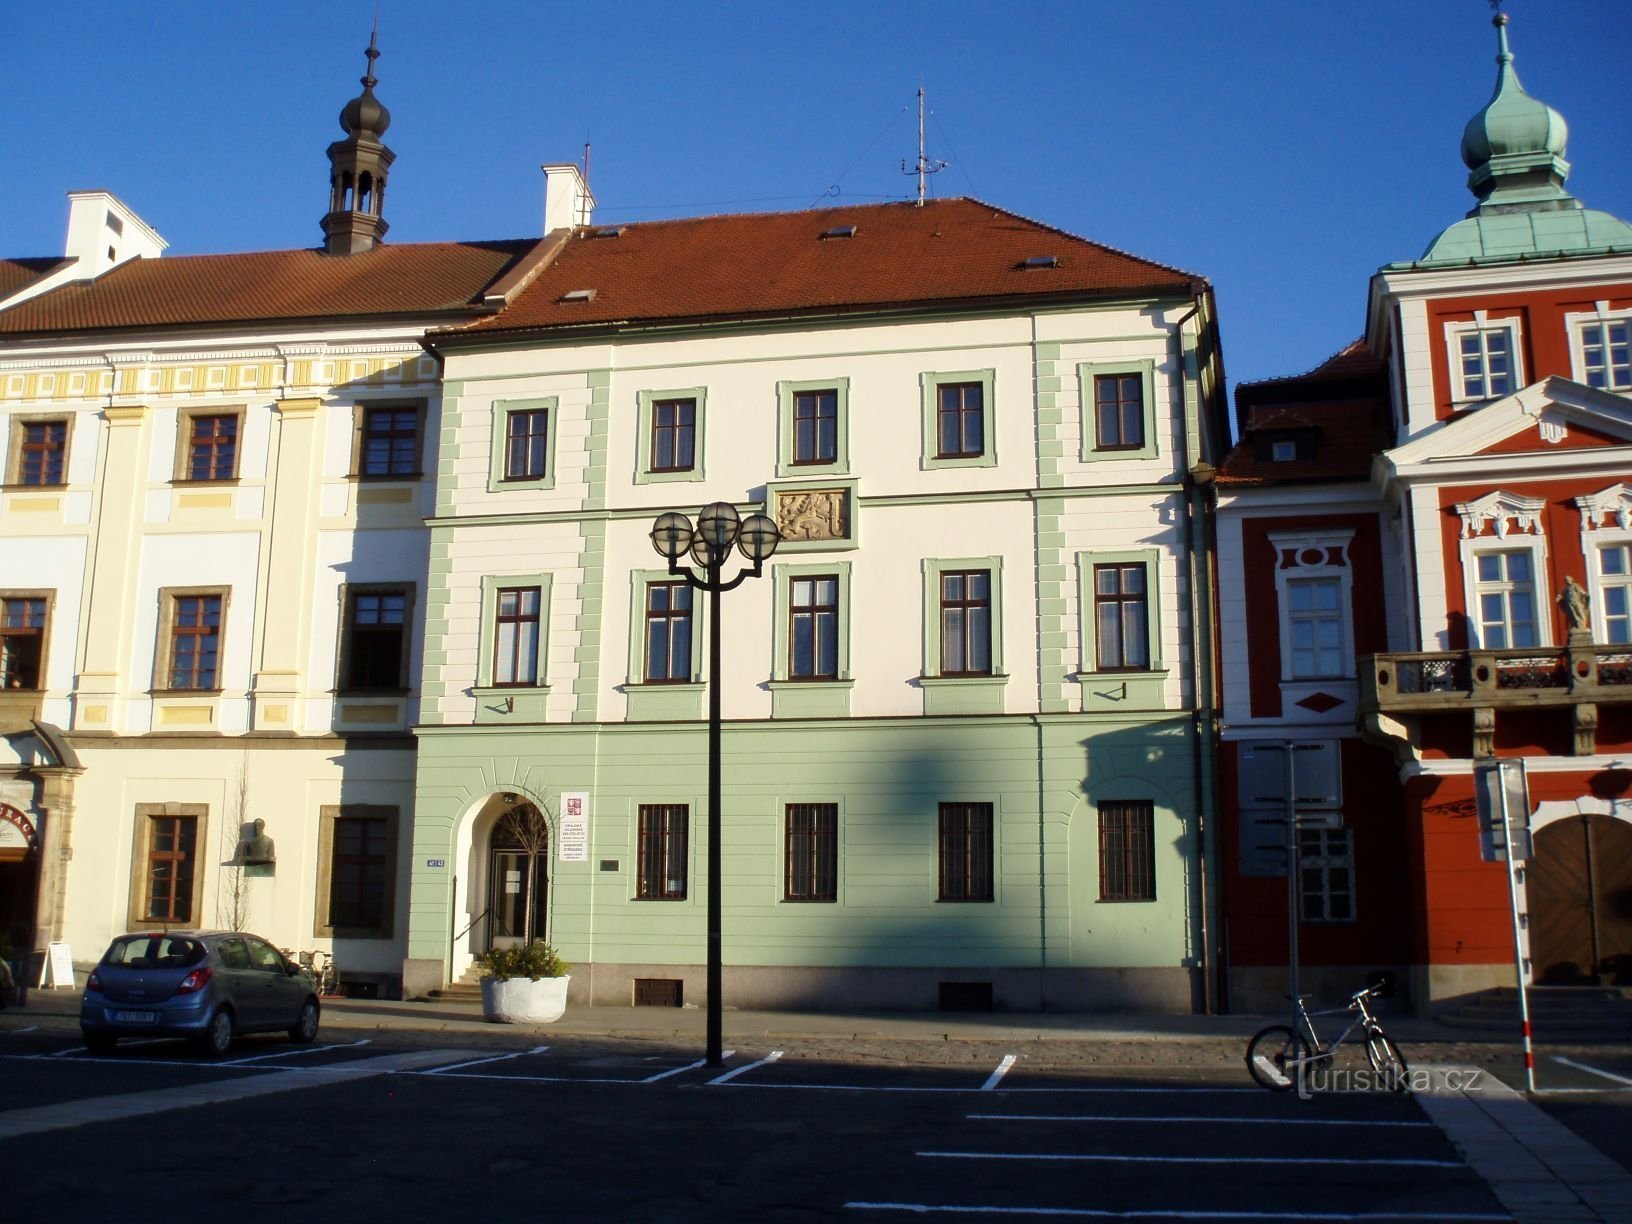 Velké náměstí No. 33 (Hradec Králové, 25.4.2012. lokakuuta XNUMX)